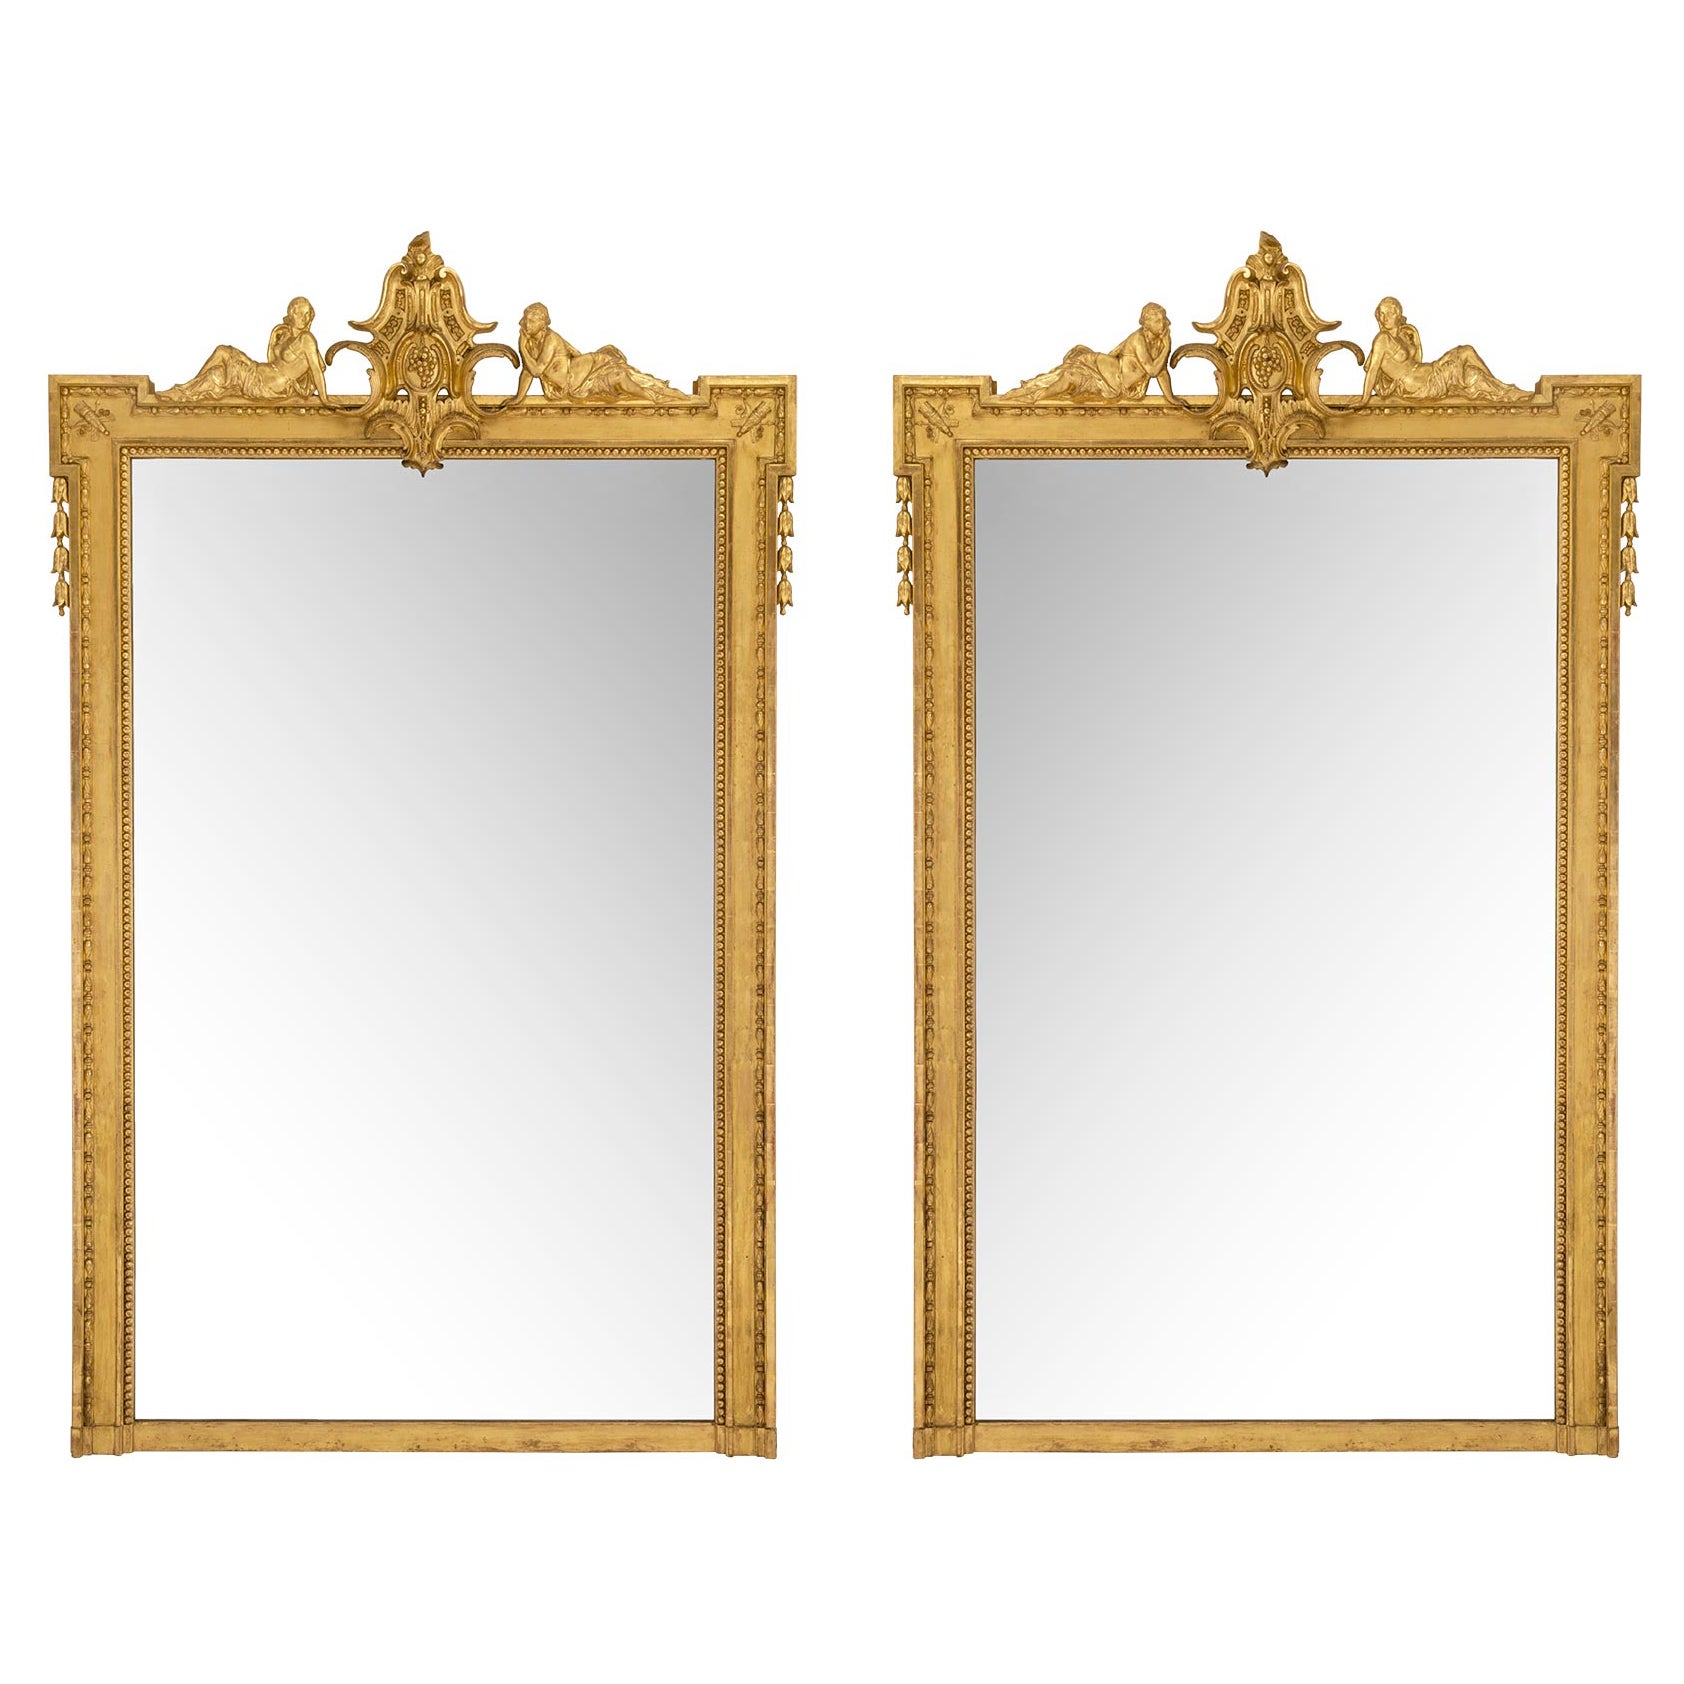 Paire de miroirs en bois doré de style Louis XVI du milieu du XIXe siècle français